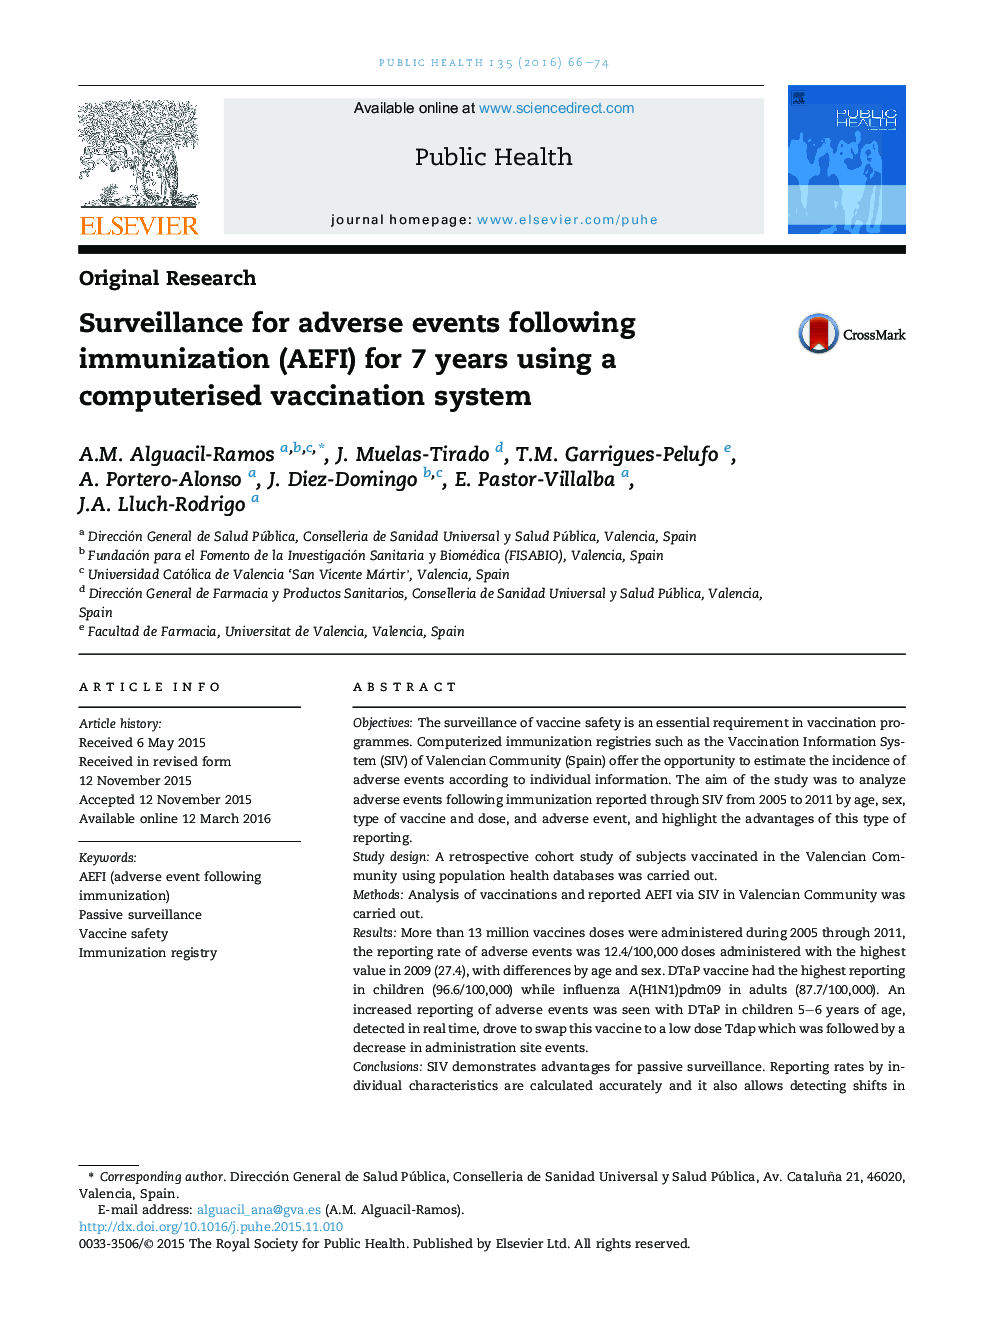 دوربین های مداربسته برای عوارض جانبی بدنبال ایمن سازی (AEFI) به مدت 7 سال با استفاده از یک سیستم کامپیوتری واکسیناسیون